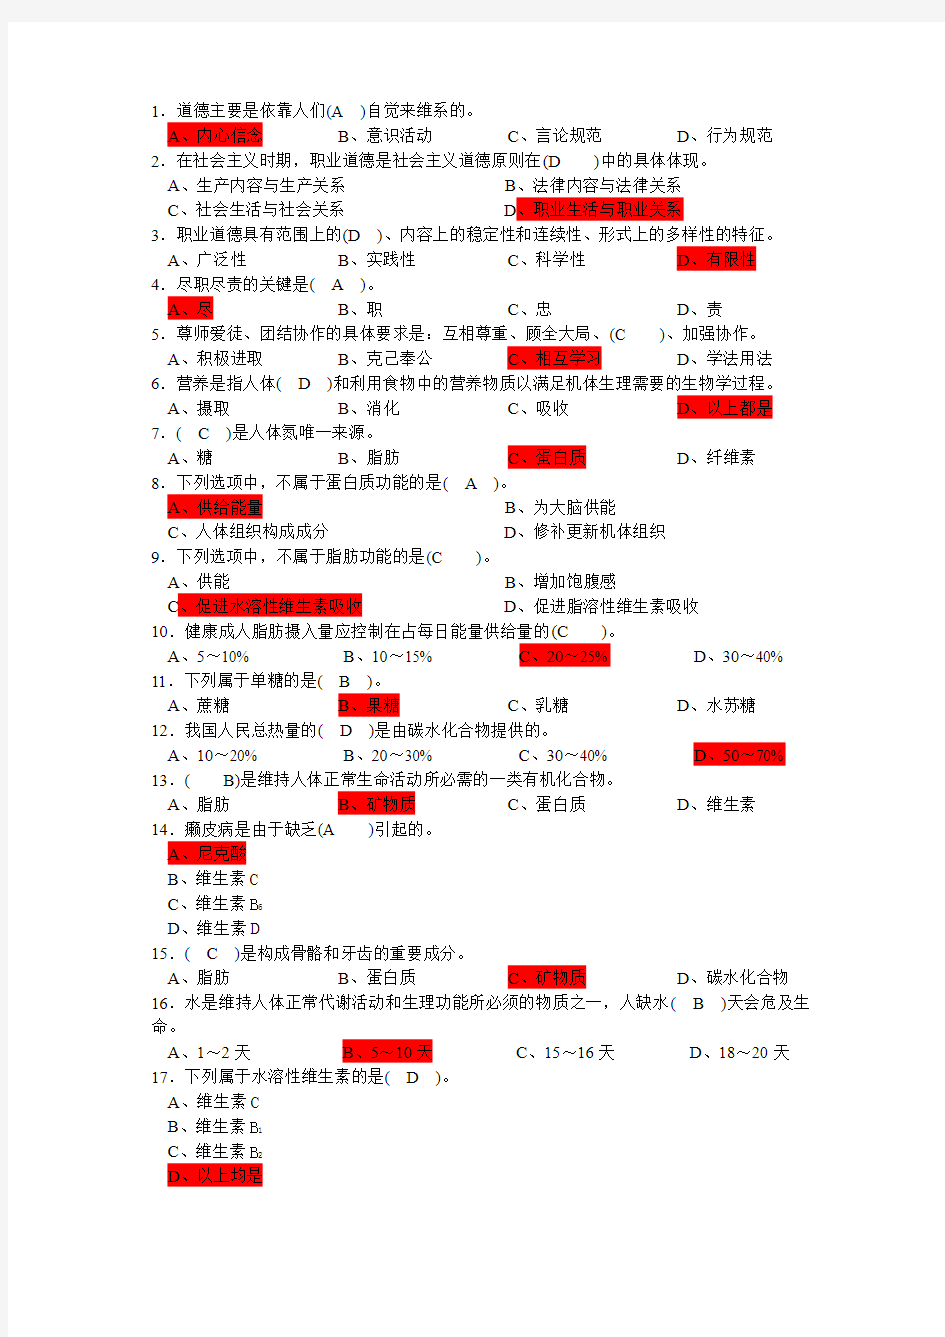 中式面点师初级考试题目整合